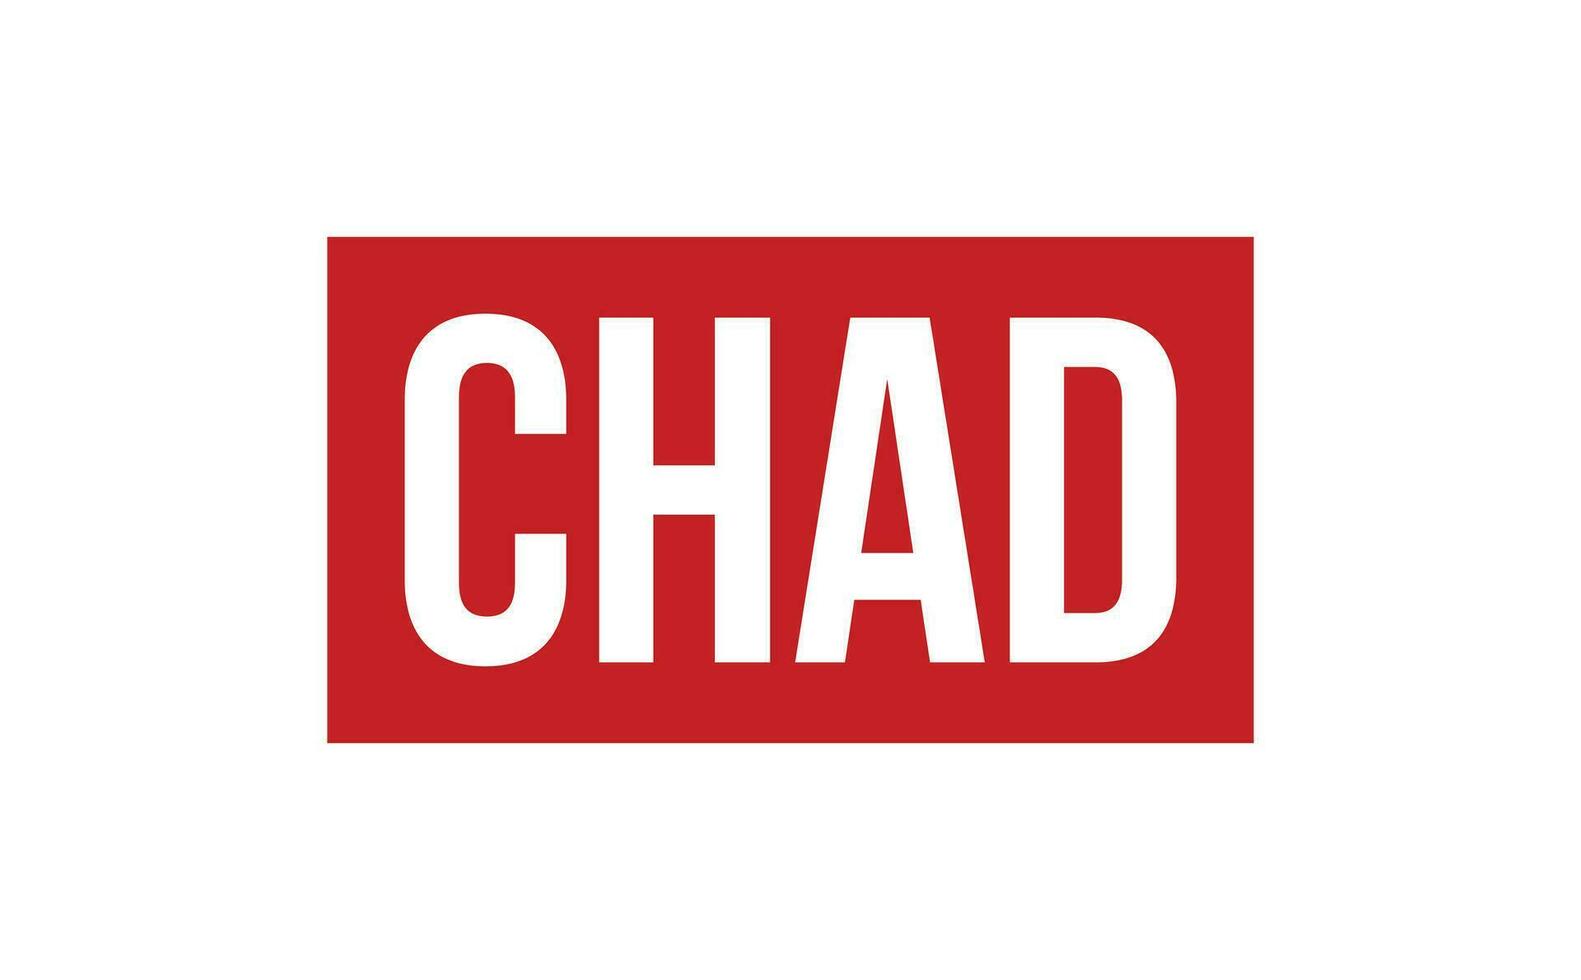 Chad caucho sello sello vector